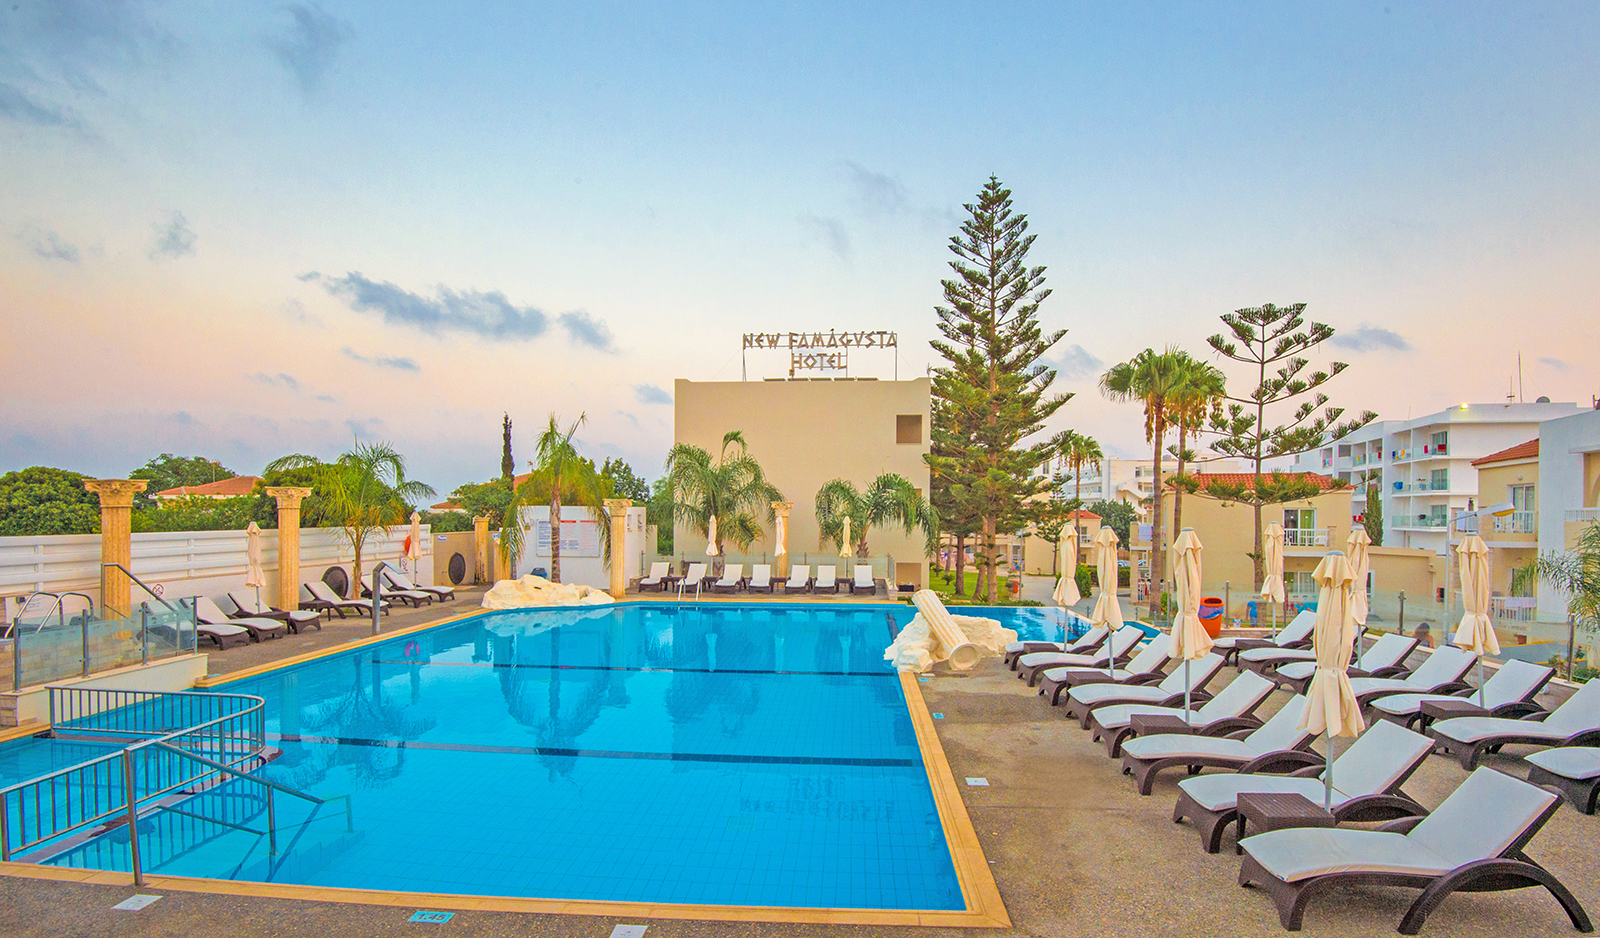 New Famagusta Hotel-Bazen na otvorenom.jpg